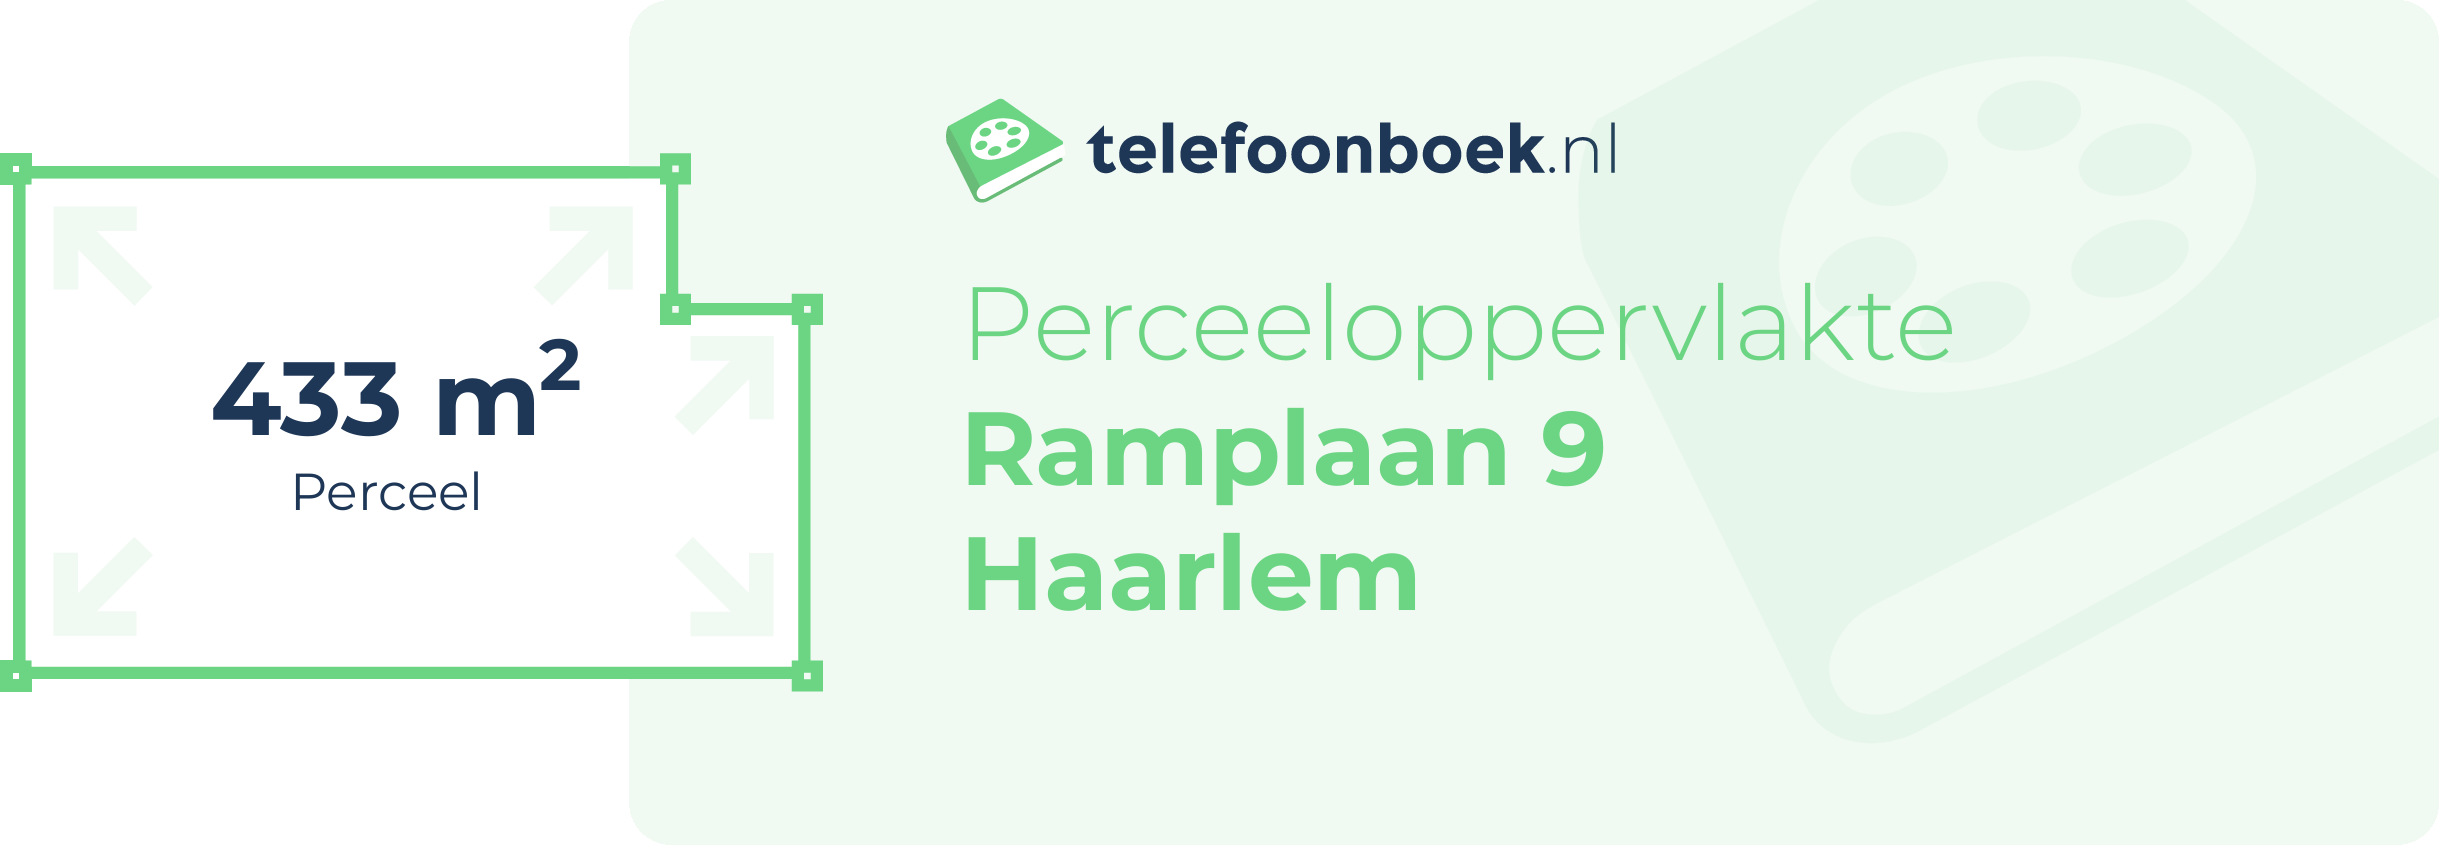 Perceeloppervlakte Ramplaan 9 Haarlem